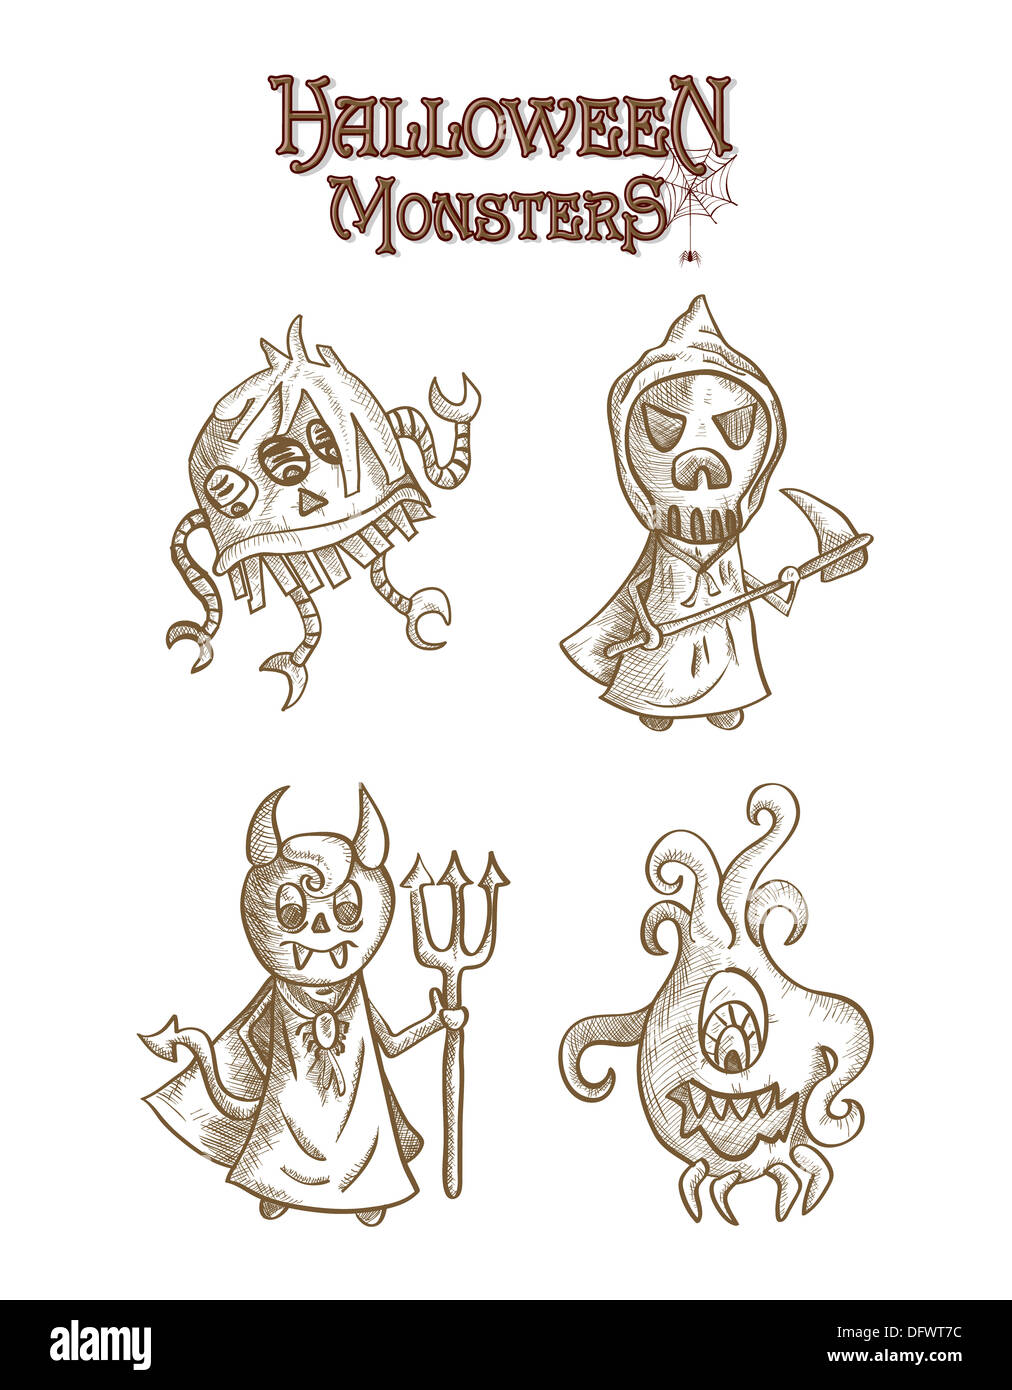 Monstruos de Halloween spooky sketch criaturas estilo dibujos animados.  Archivo vectorial EPS10 organiza en capas para facilitar la edición  Fotografía de stock - Alamy